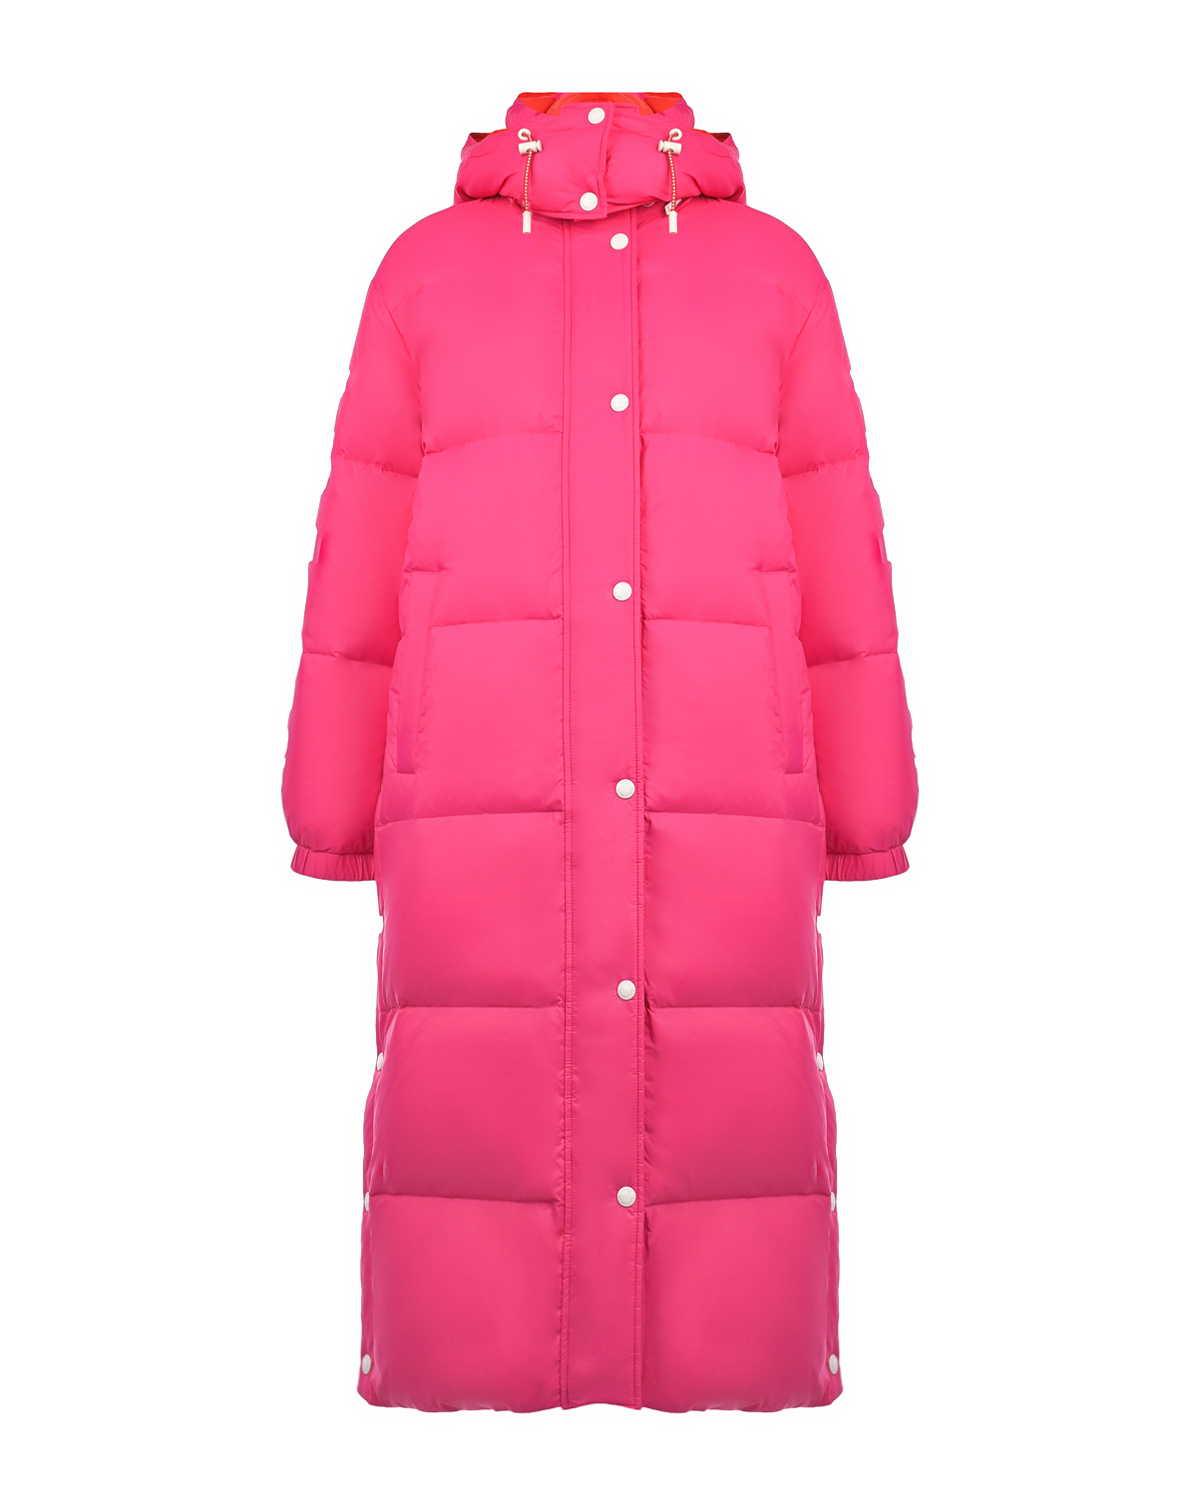 Двухстороннее пальто-пуховик, красный/розовый Yves Salomon, размер 36, цвет нет цвета Двухстороннее пальто-пуховик, красный/розовый Yves Salomon - фото 1